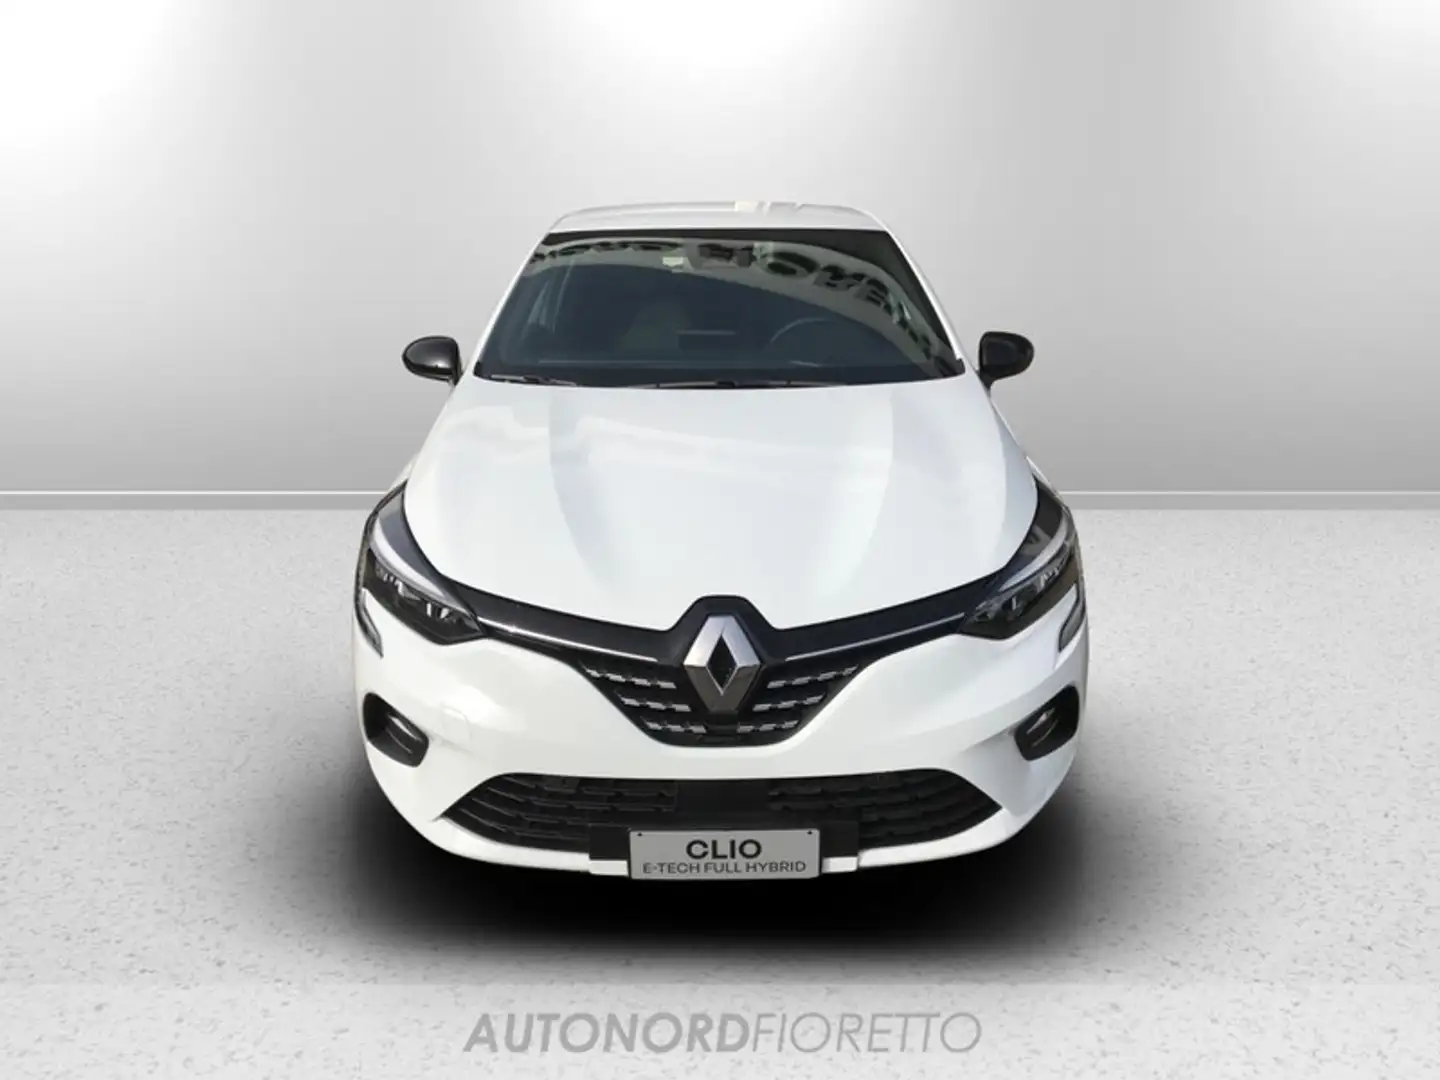 Renault Clio 1.6 e-tech full hybrid techno 145cv auto Wit - 2